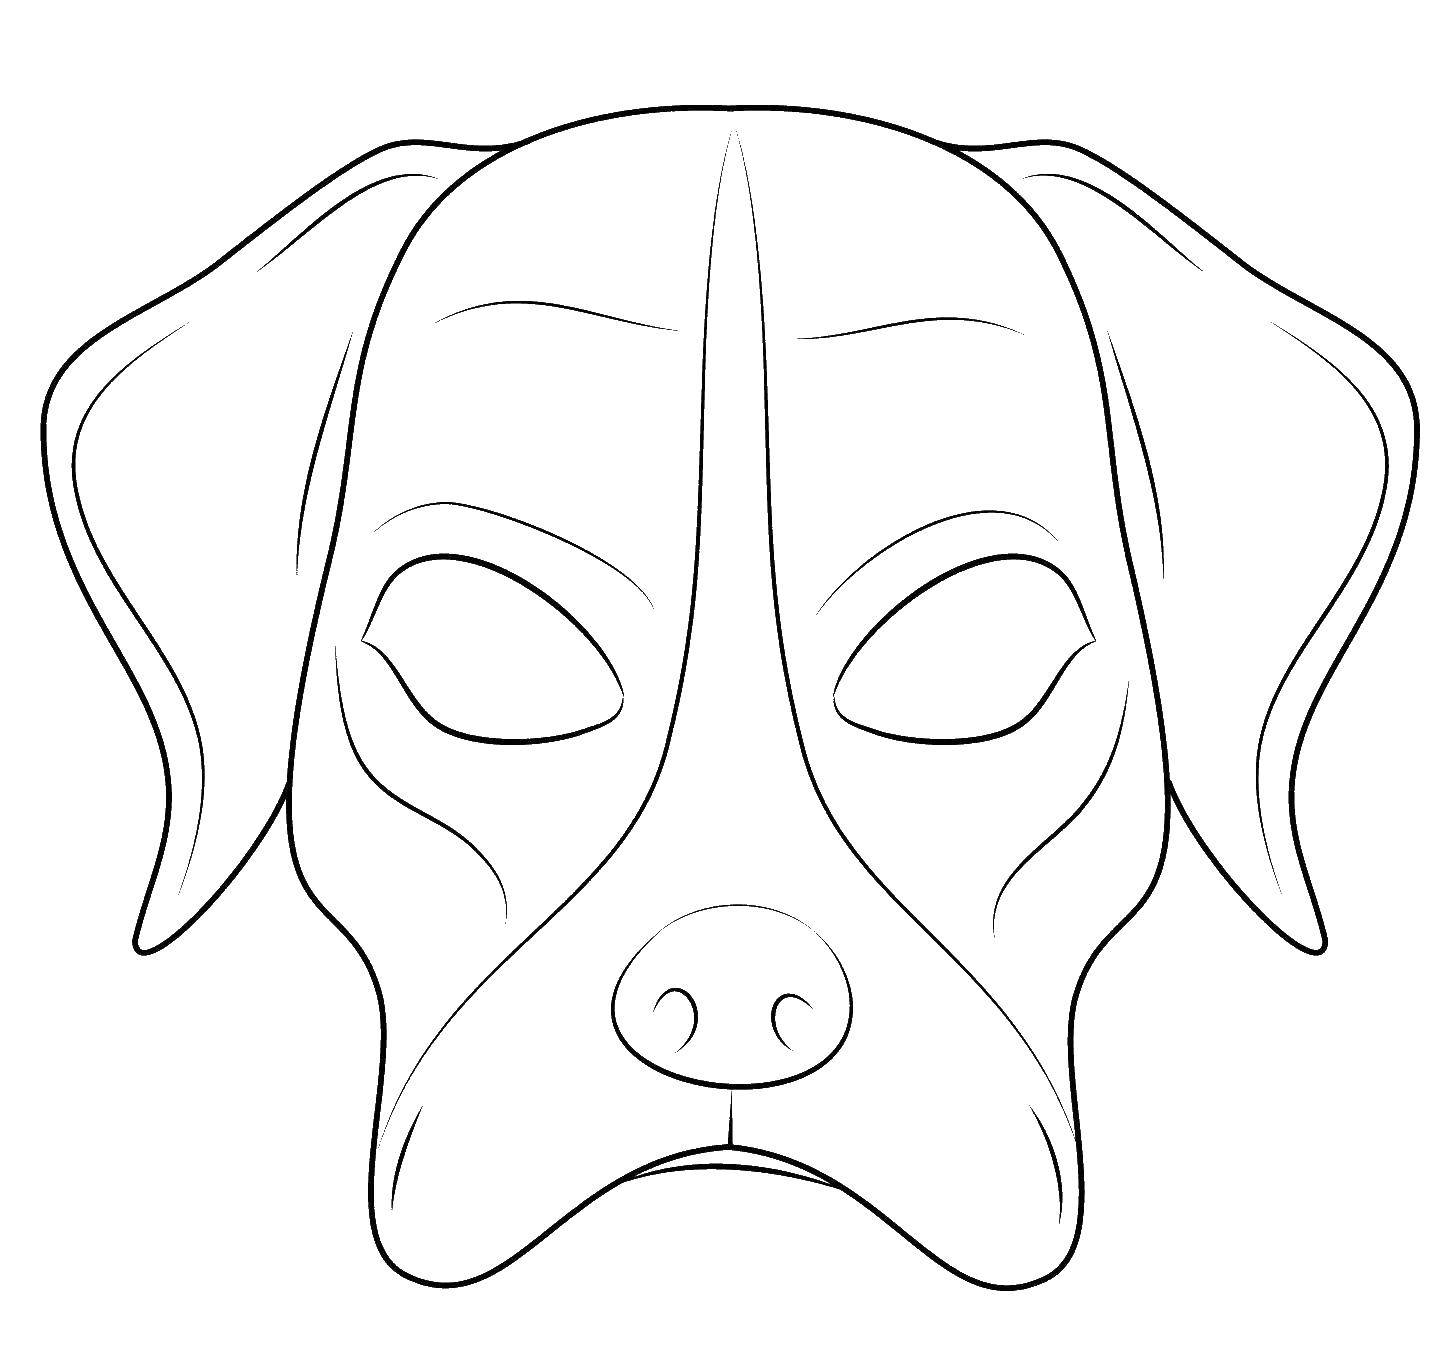 Coloring Mask dog. Category Masks . Tags:  mask, dog.